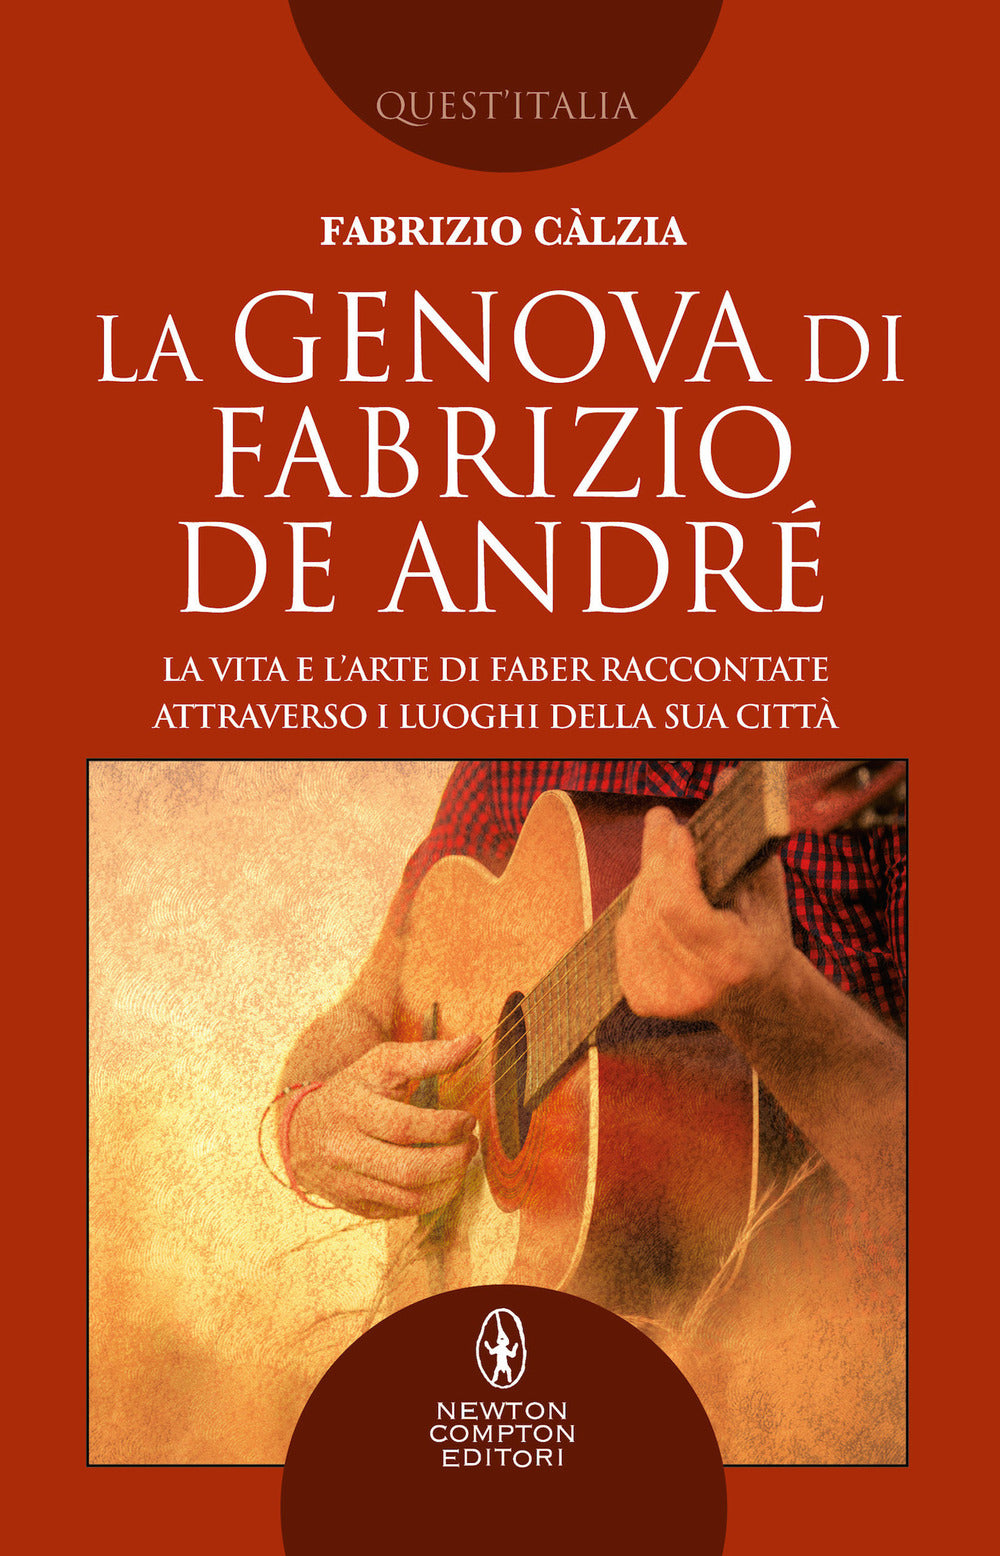 La Genova di Fabrizio De André. La vita e l'arte di Faber raccontate attraverso i luoghi della sua città.